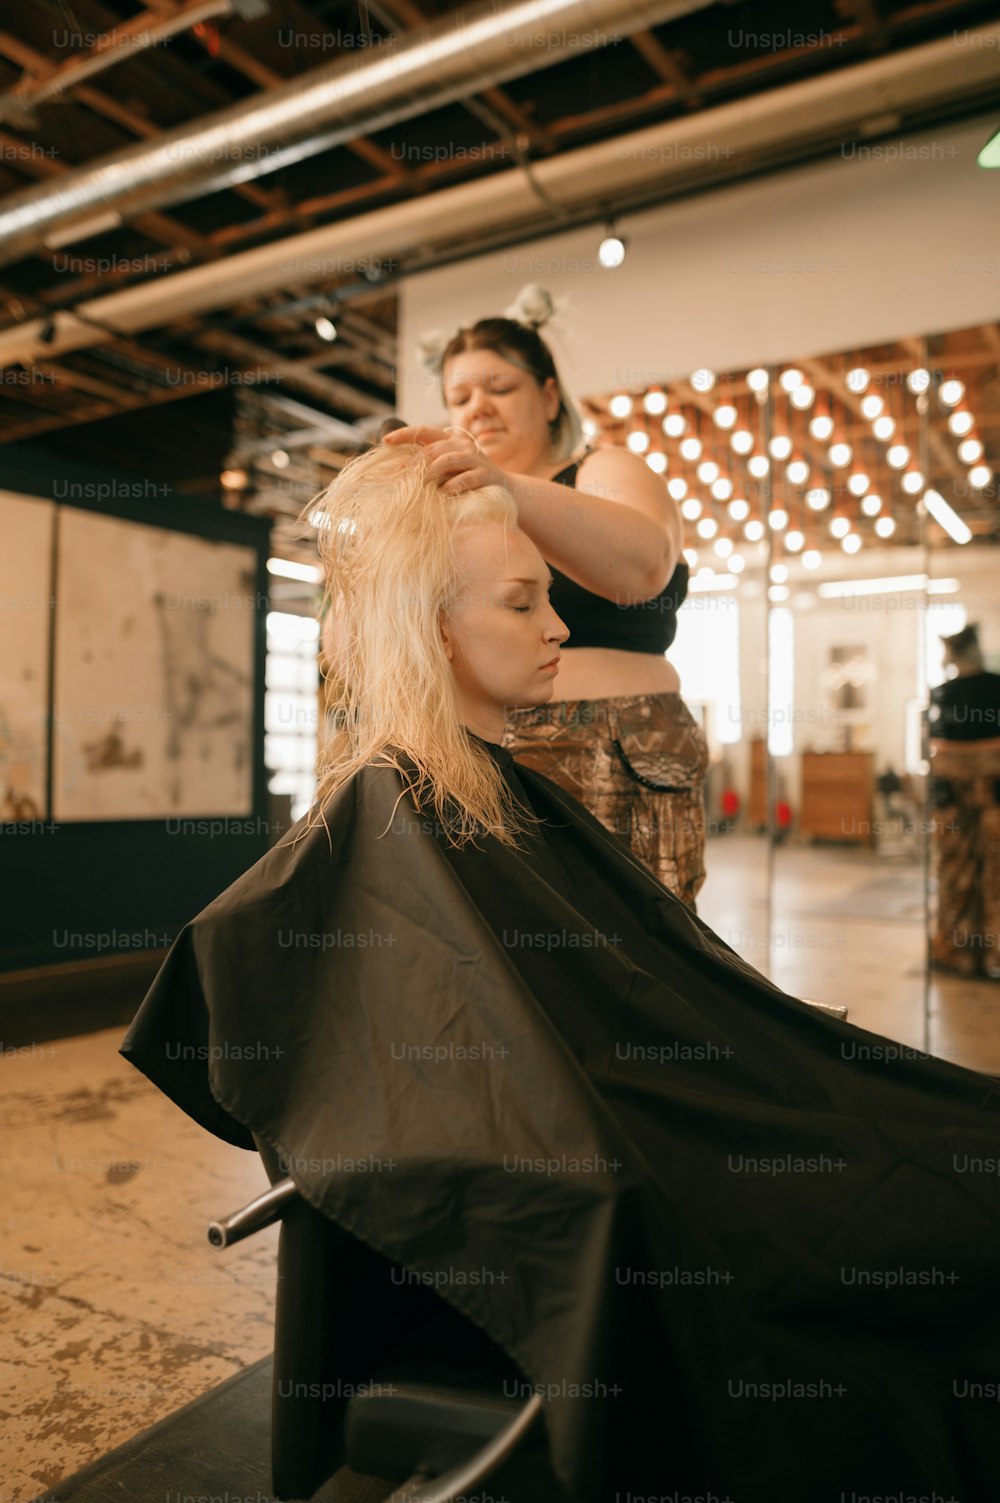 Una mujer cortando el cabello de otra mujer en un salón